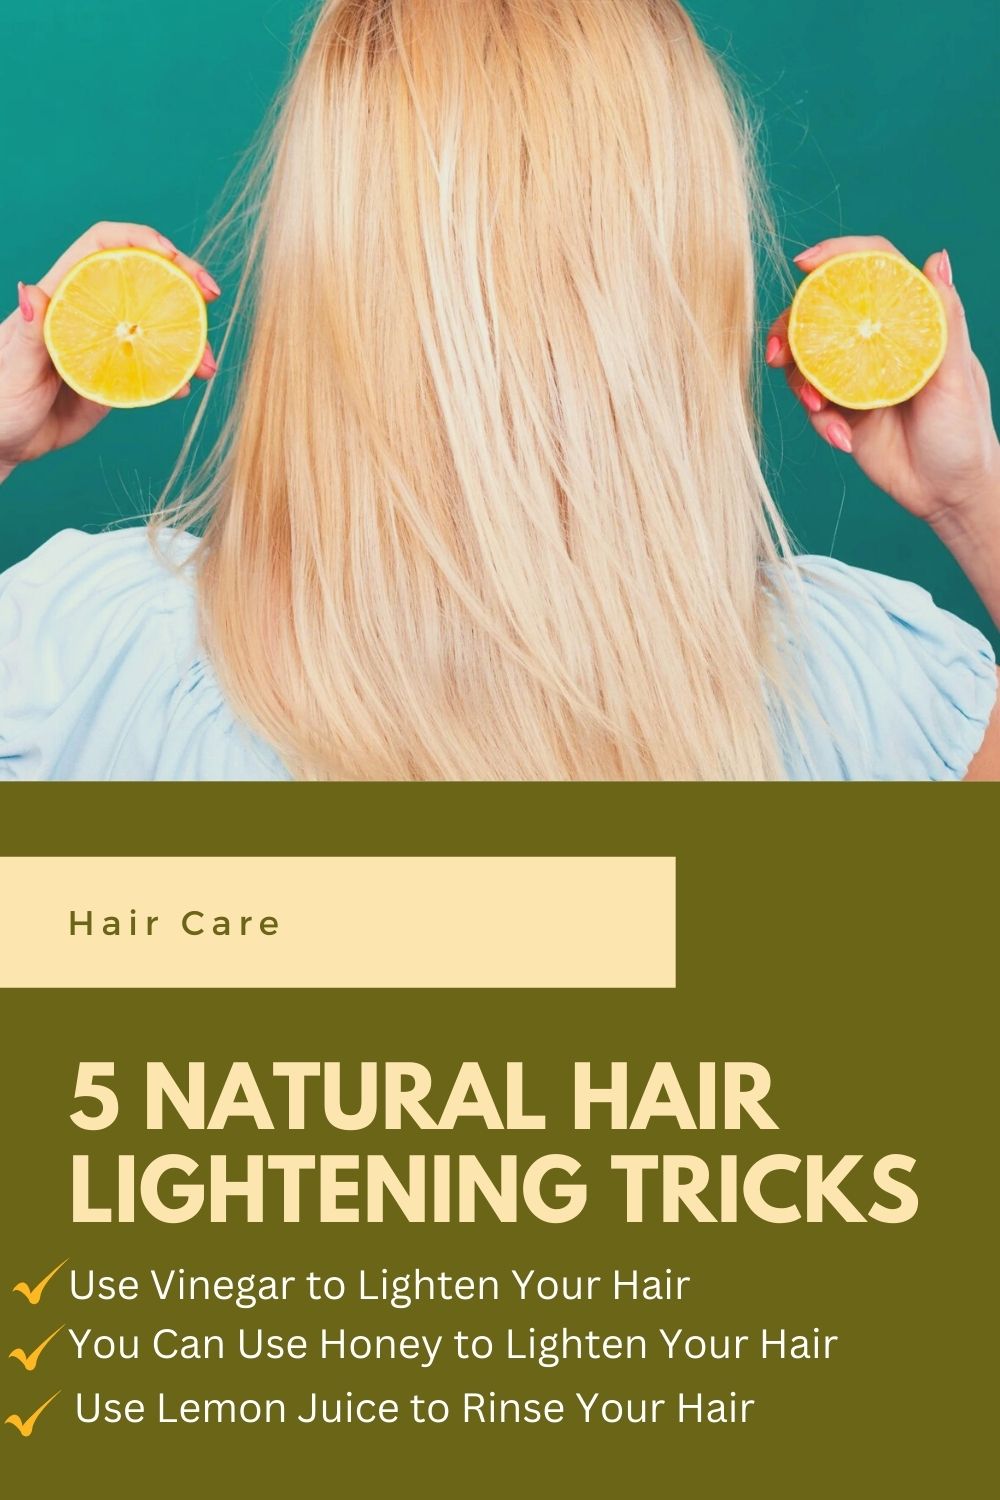 Lighten your hair naturally